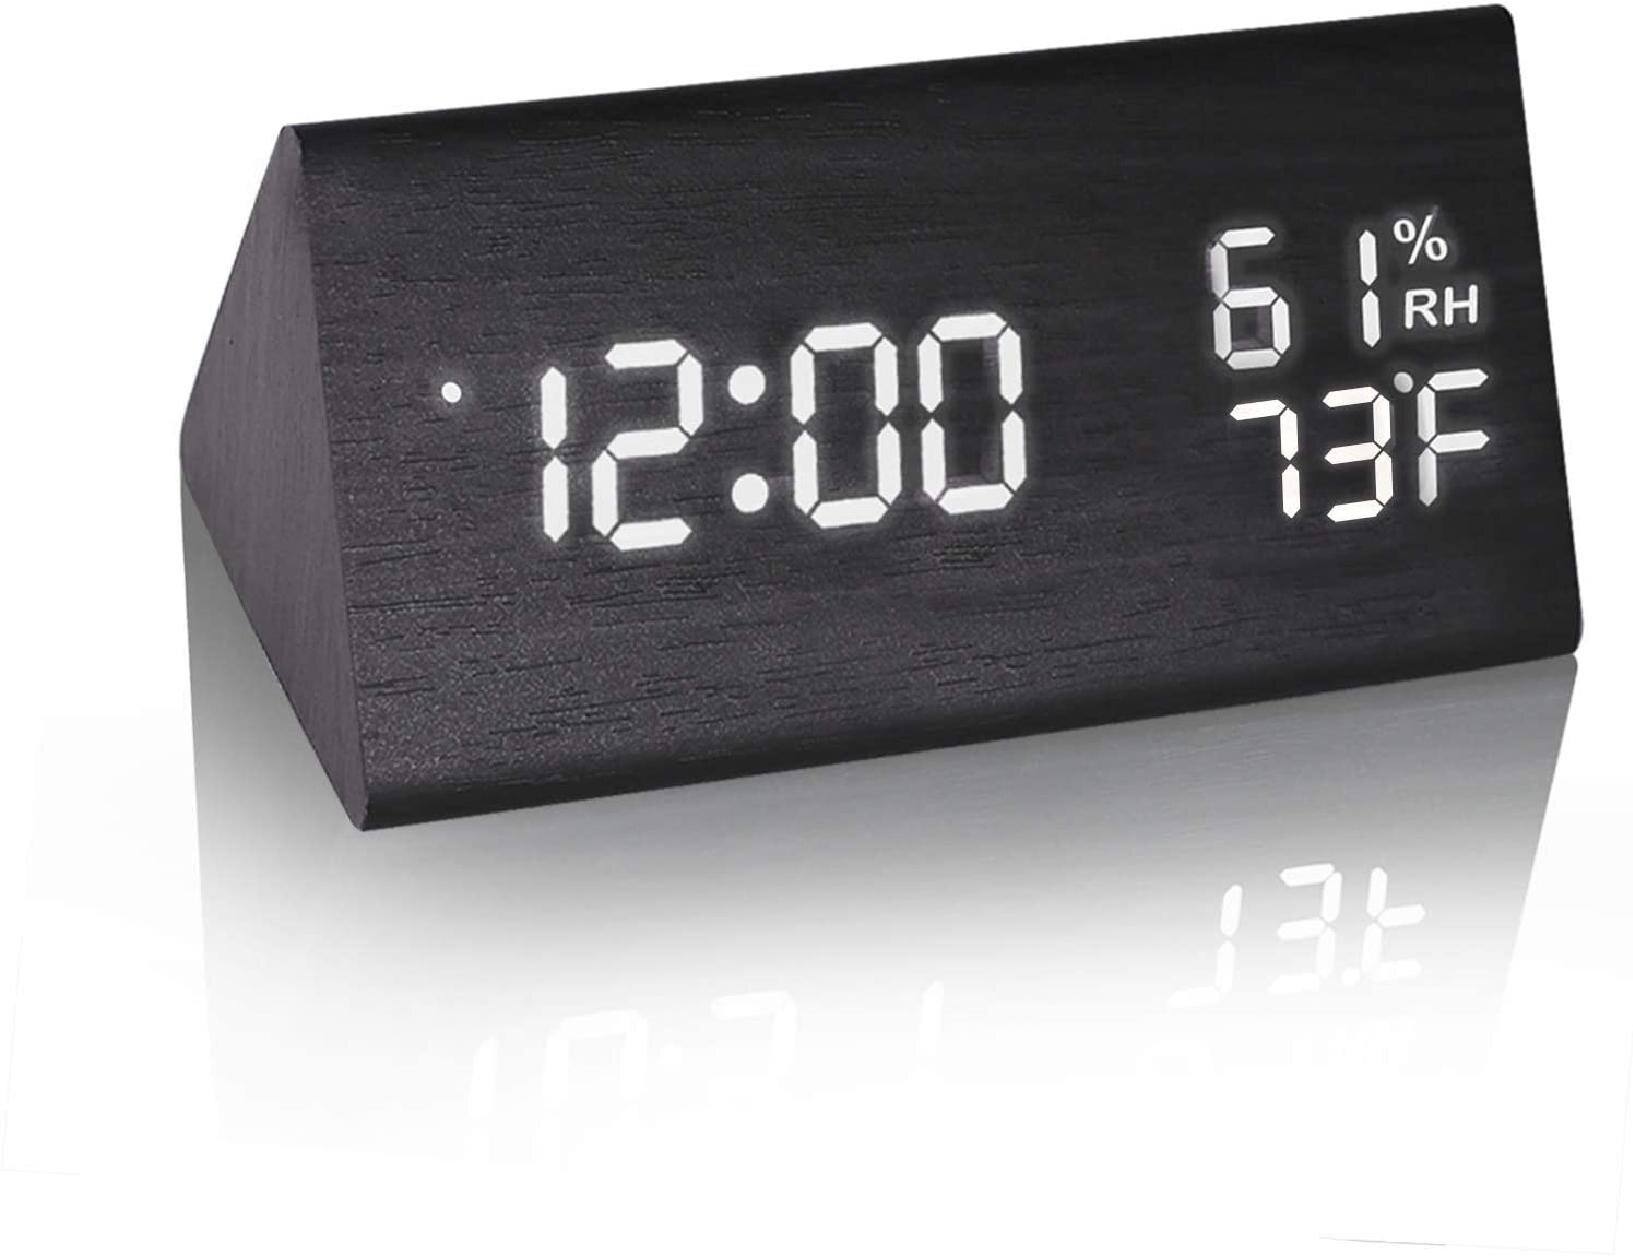 Modern Digital LED Display Desk Table Clock Temperature Alarm Bedside Home Decor 